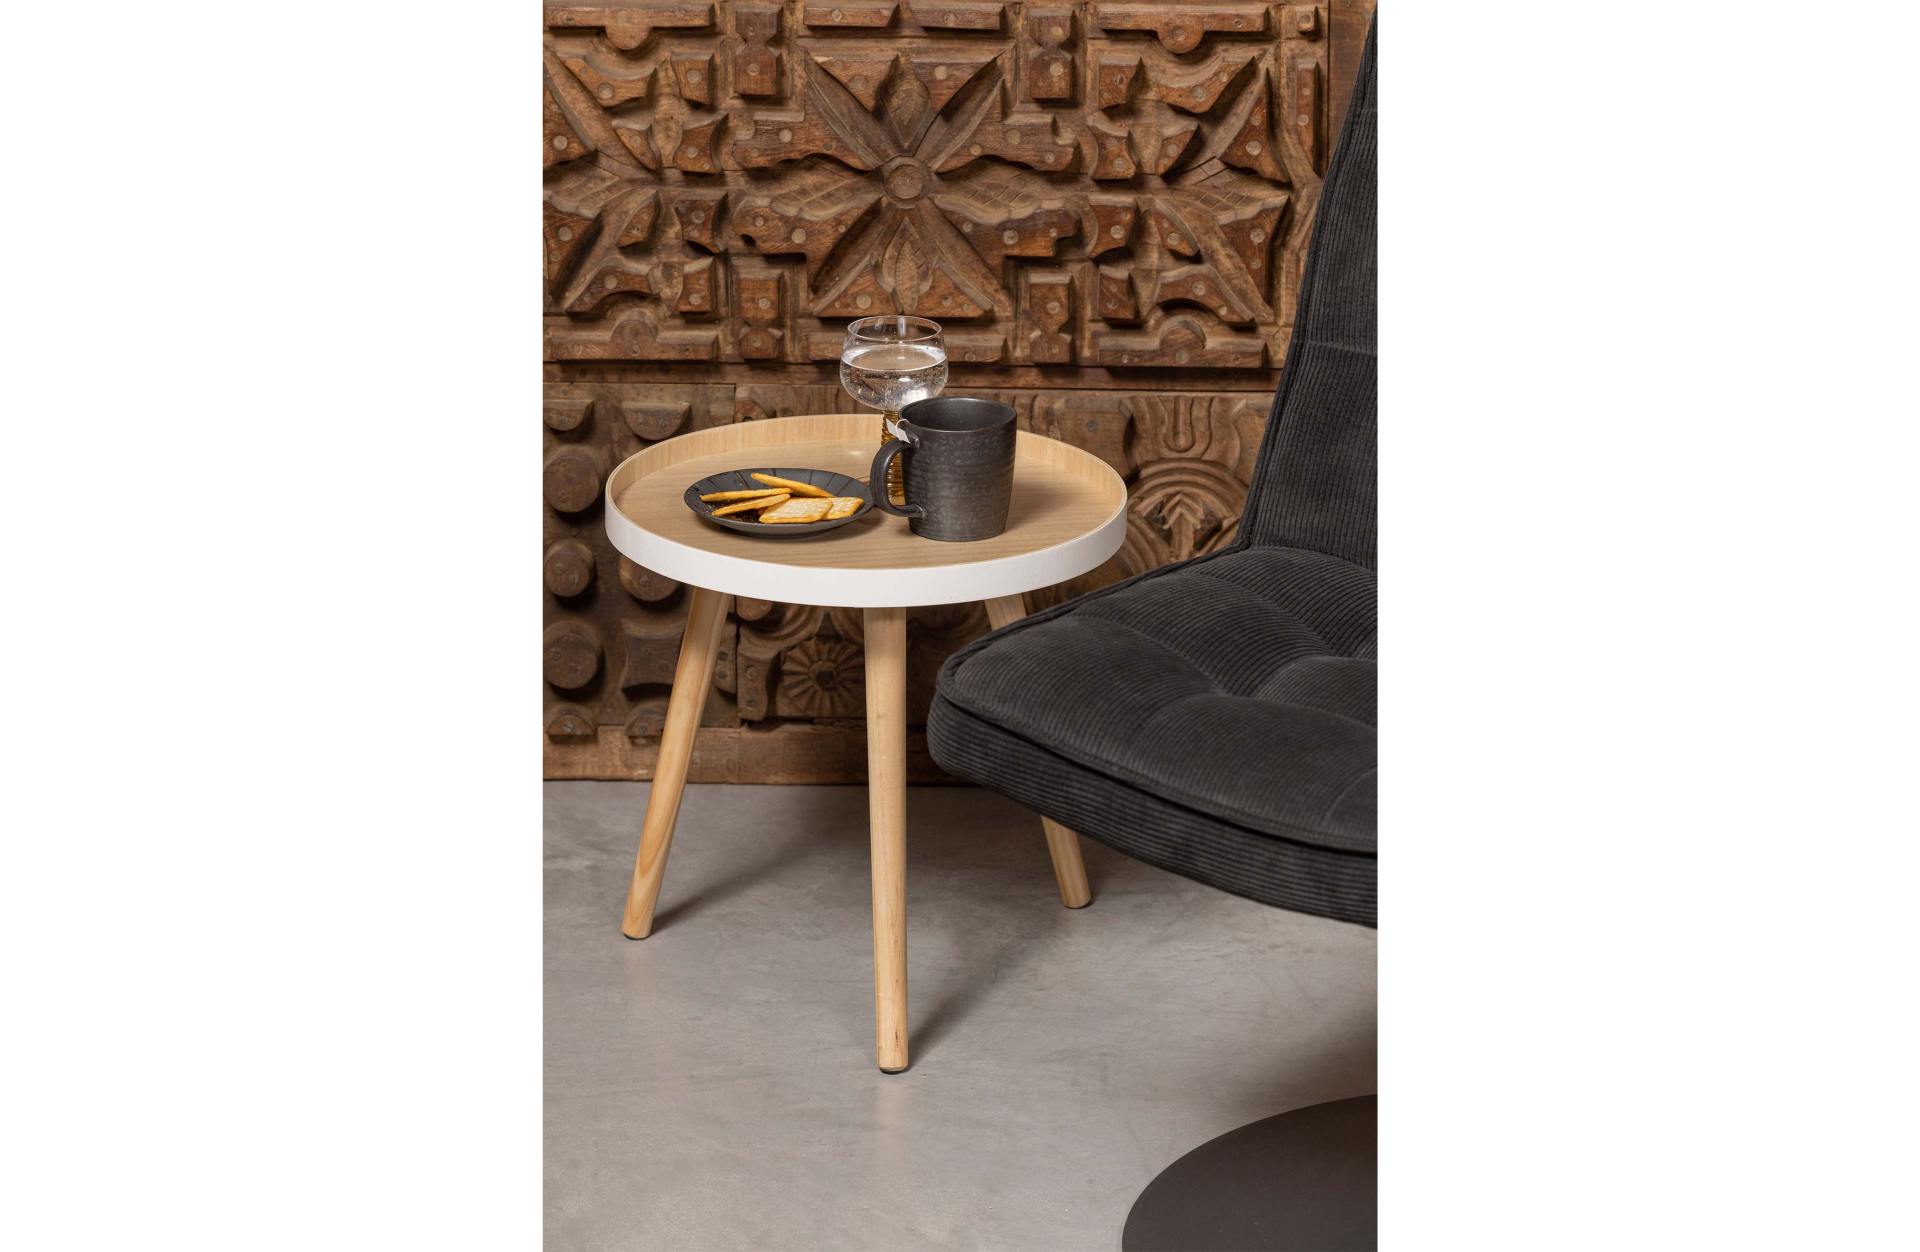 Der Couchtisch Sasha besitzt eine runde Form. Der Tisch ist in einem weißen Farbton, nur die Tischplatte ist natürlich gehalten und schafft einen schönen Kontrast.